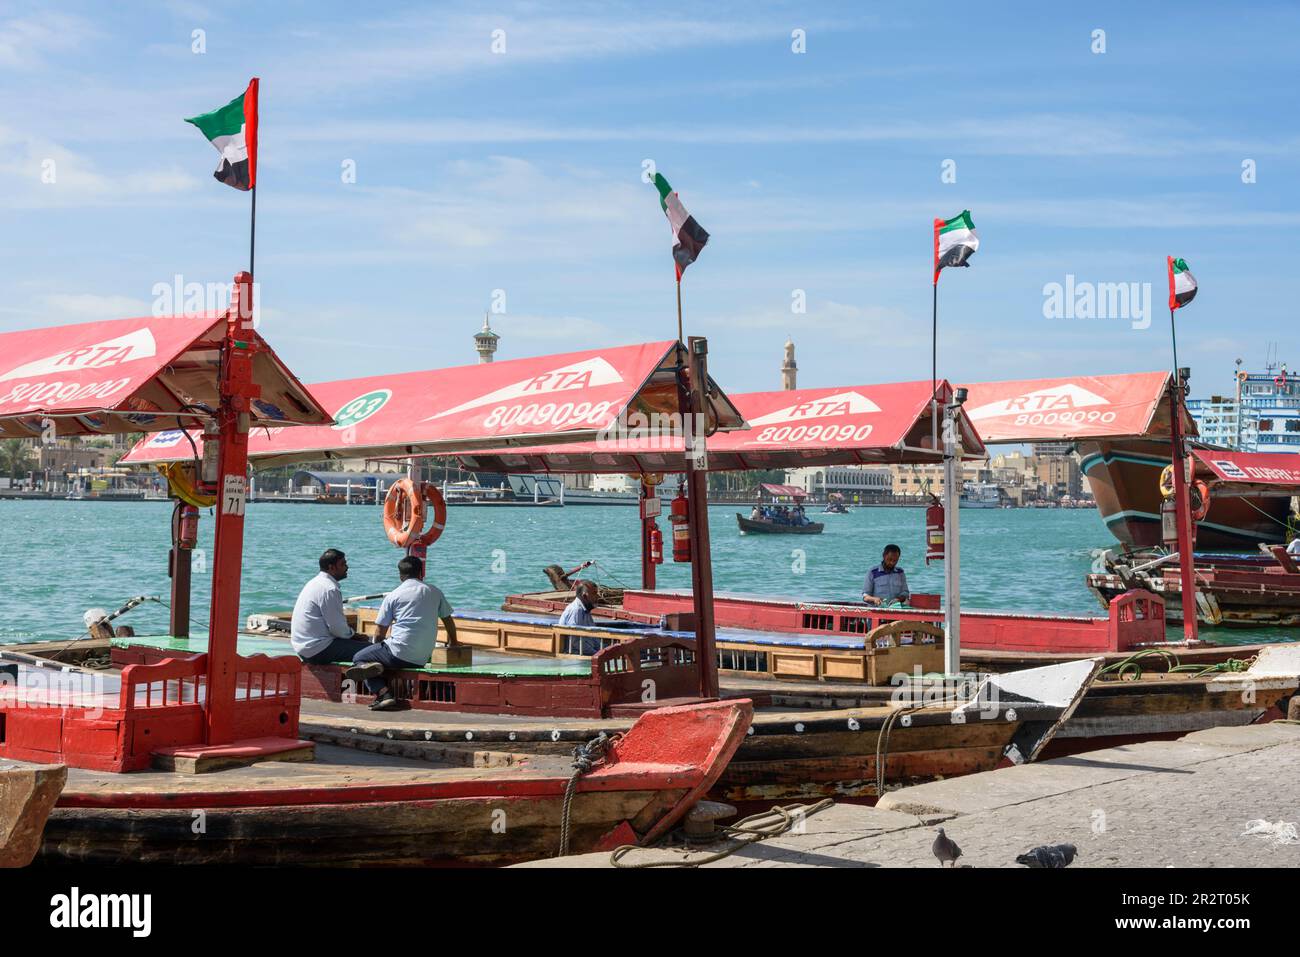 Abra ferry boats or water taxis on Khor Dubai (Dubai Creek), Dubai, United Arab Emirates Stock Photo